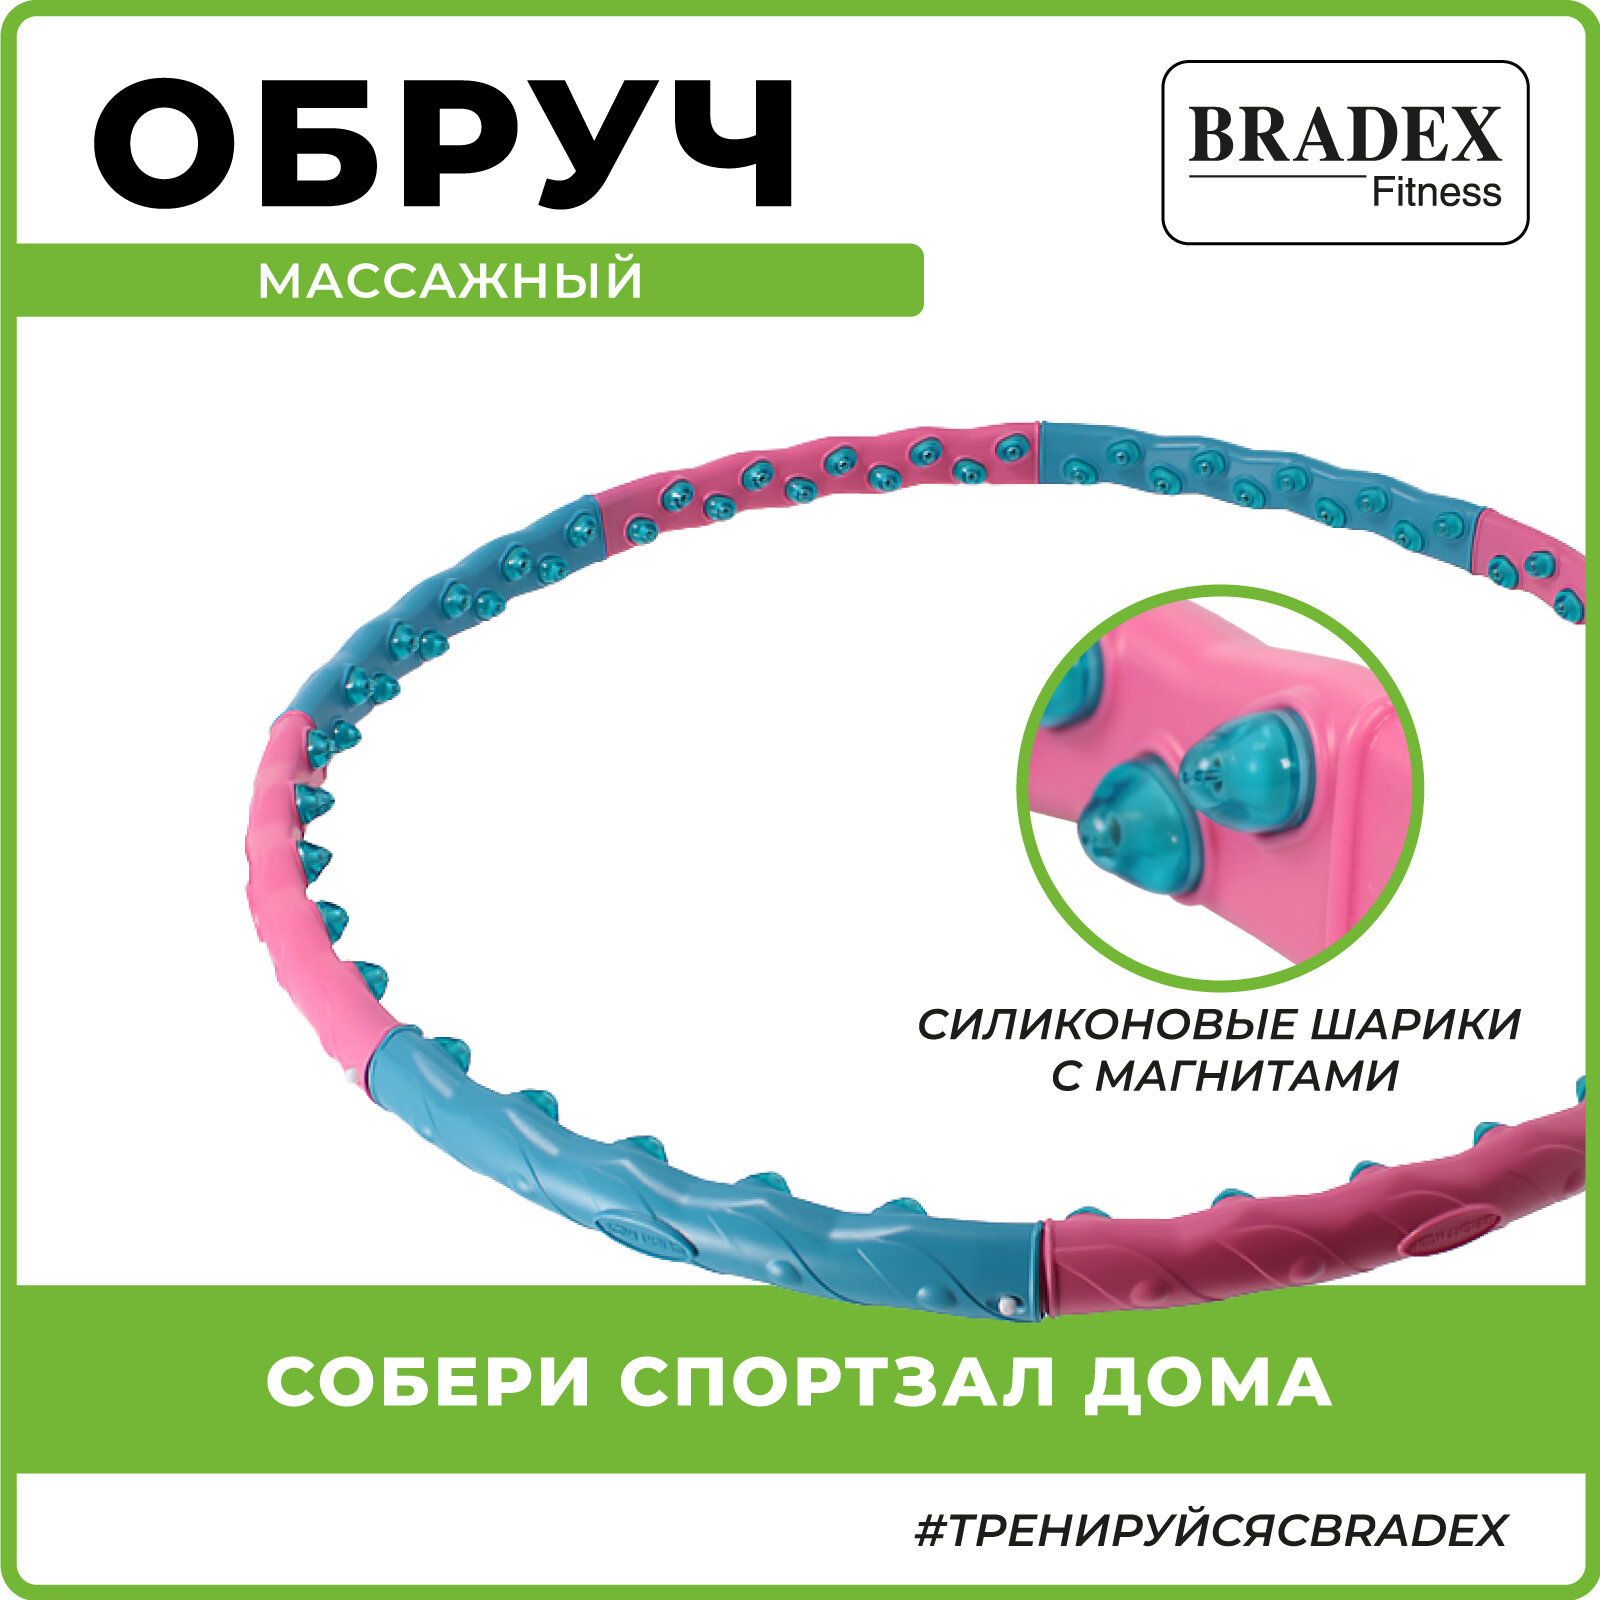 Массажный обруч BRADEX С 80 силиконовыми шариками SF0547 110 см голубой/розовый 1,45 кг